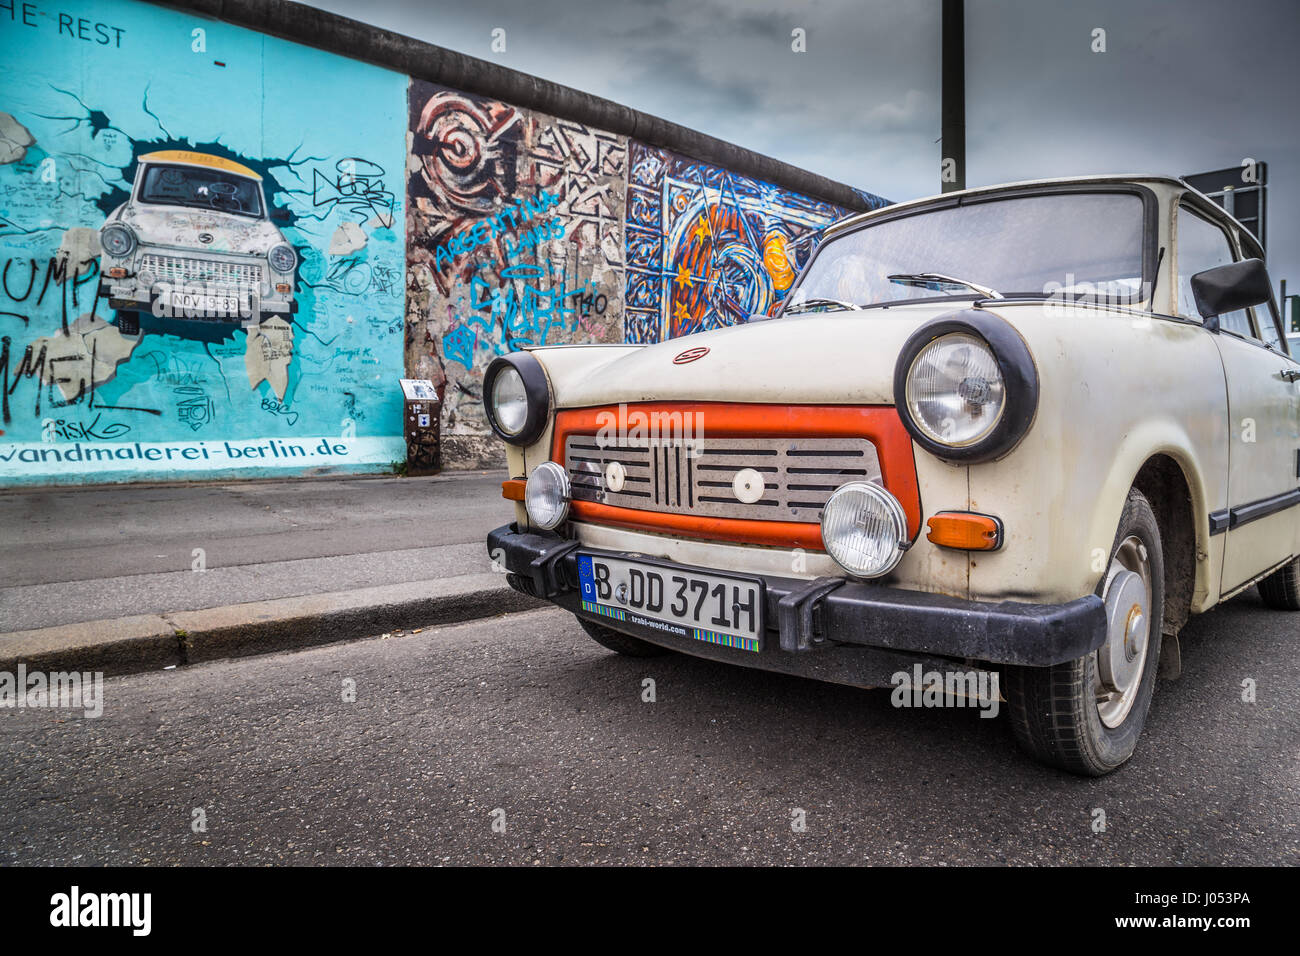 Célèbre Mur de Berlin (Berliner Mauer) à East Side Gallery avec une vieille Trabant, véhicule le plus commun utilisé dans l'Allemagne de l'Est, au centre de Berlin, Allemagne Banque D'Images